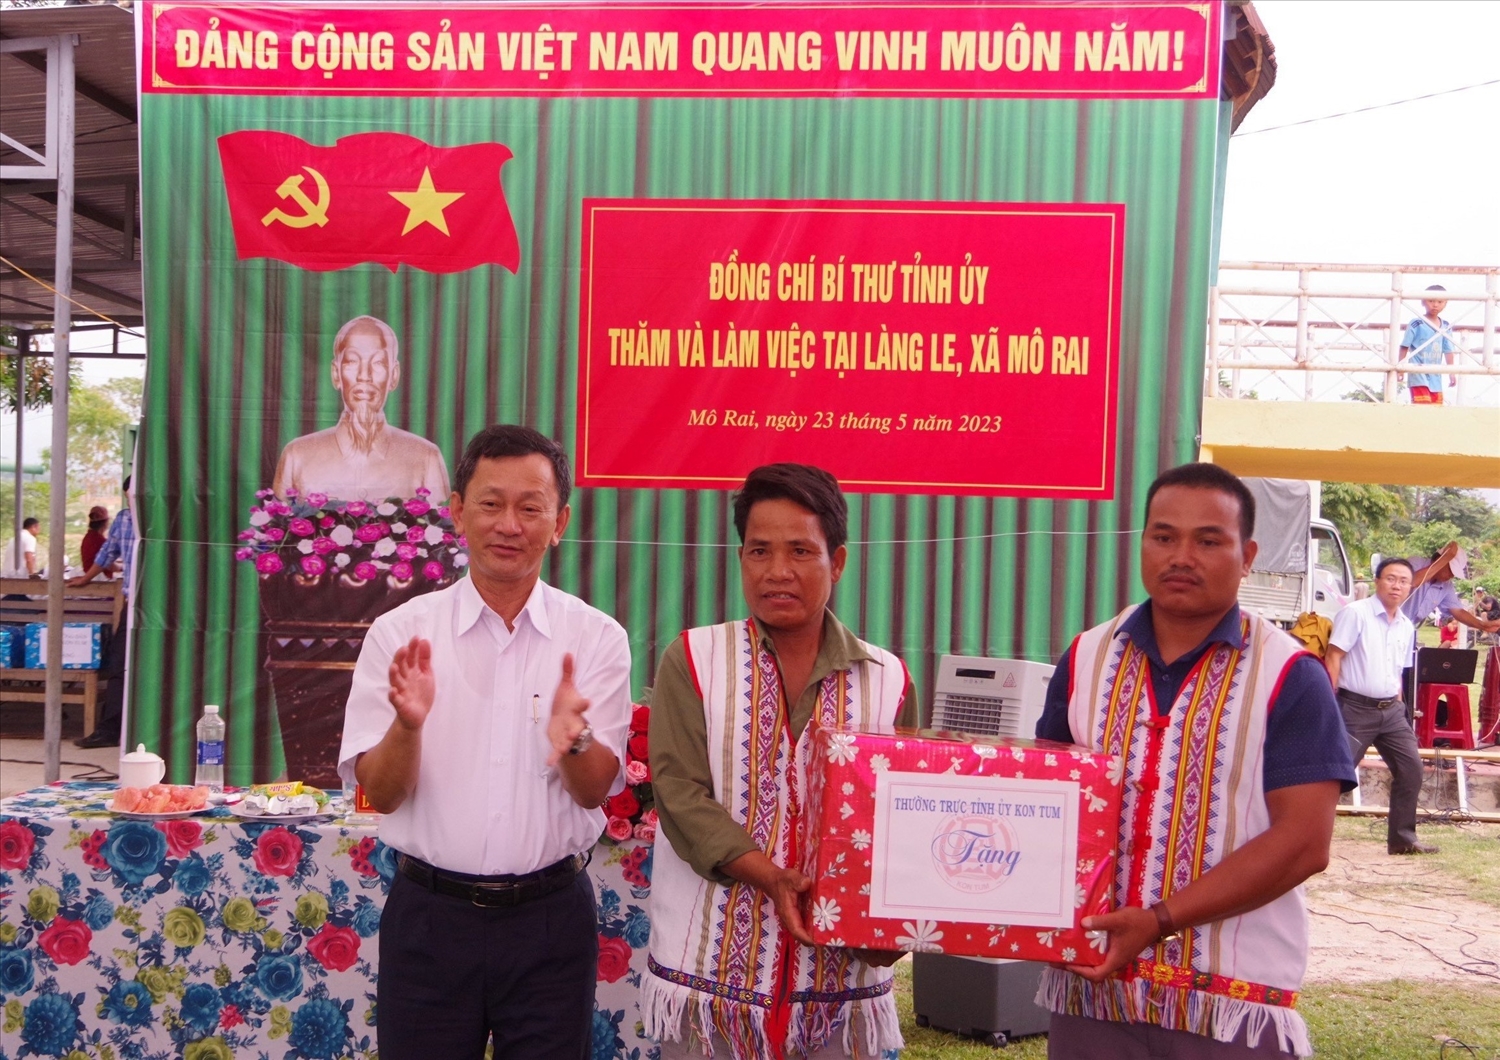 (Anh A Thái, Bí thư Chi bộ, Trưởng làng Le (ngoài cùng bên phải) nhận quà do Bí thư Tỉnh ủy Kon Tum trao tặng